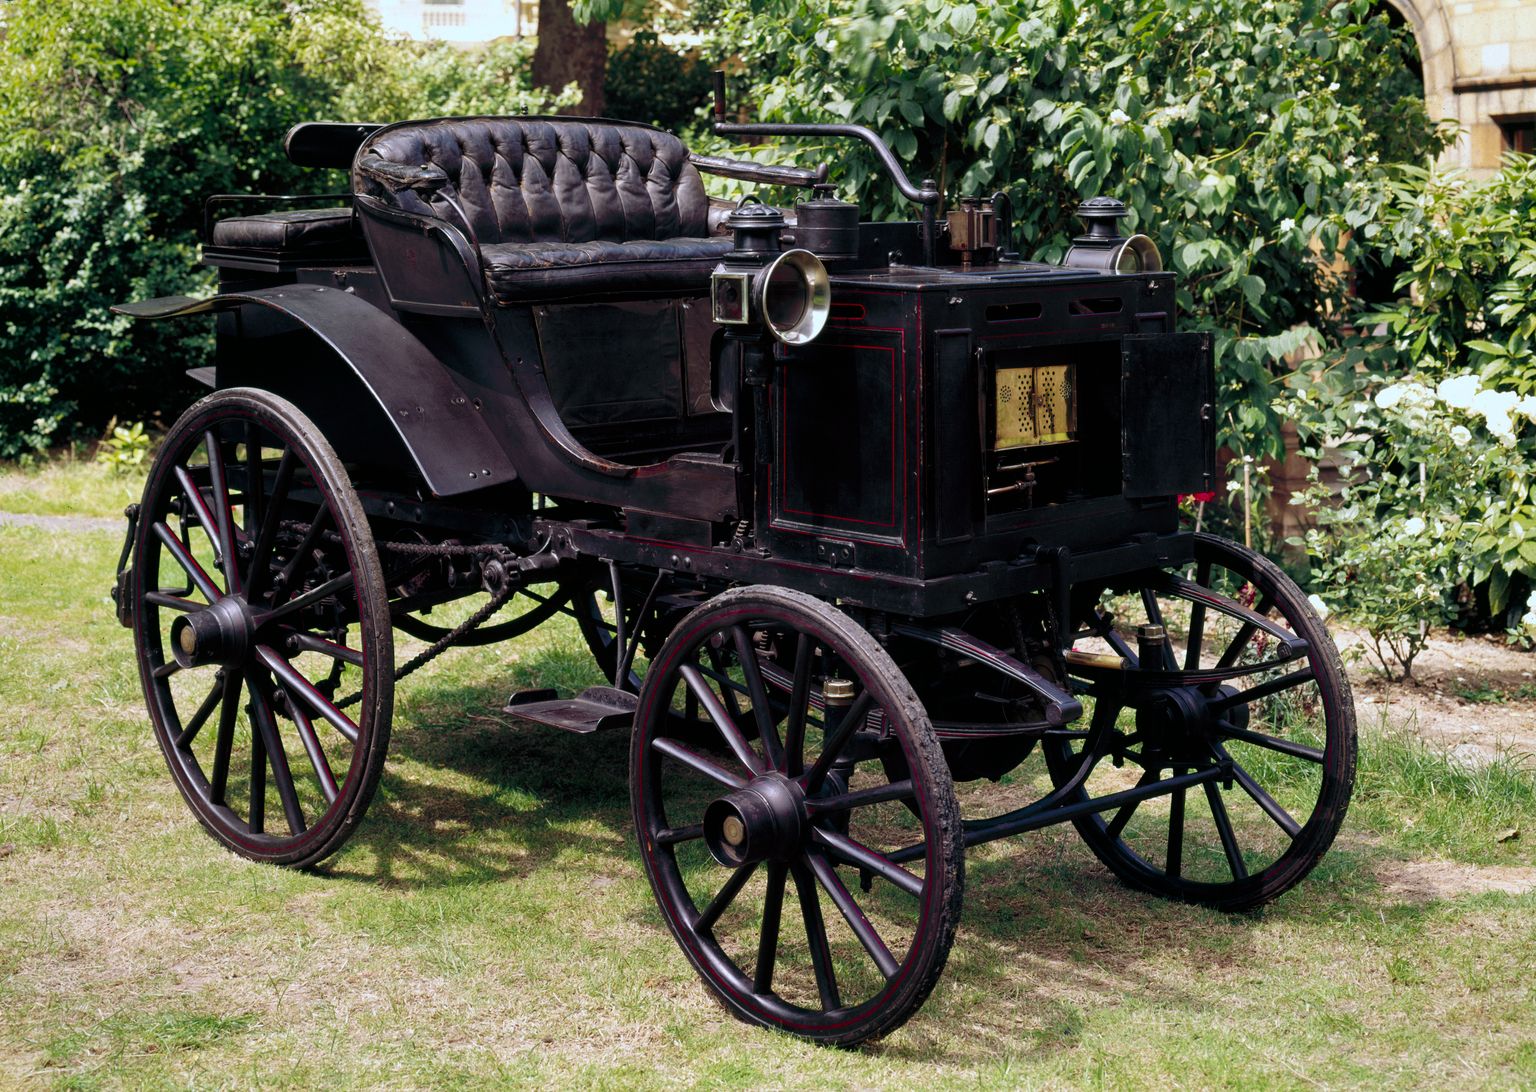 1895 Panhard et Levassor motor car